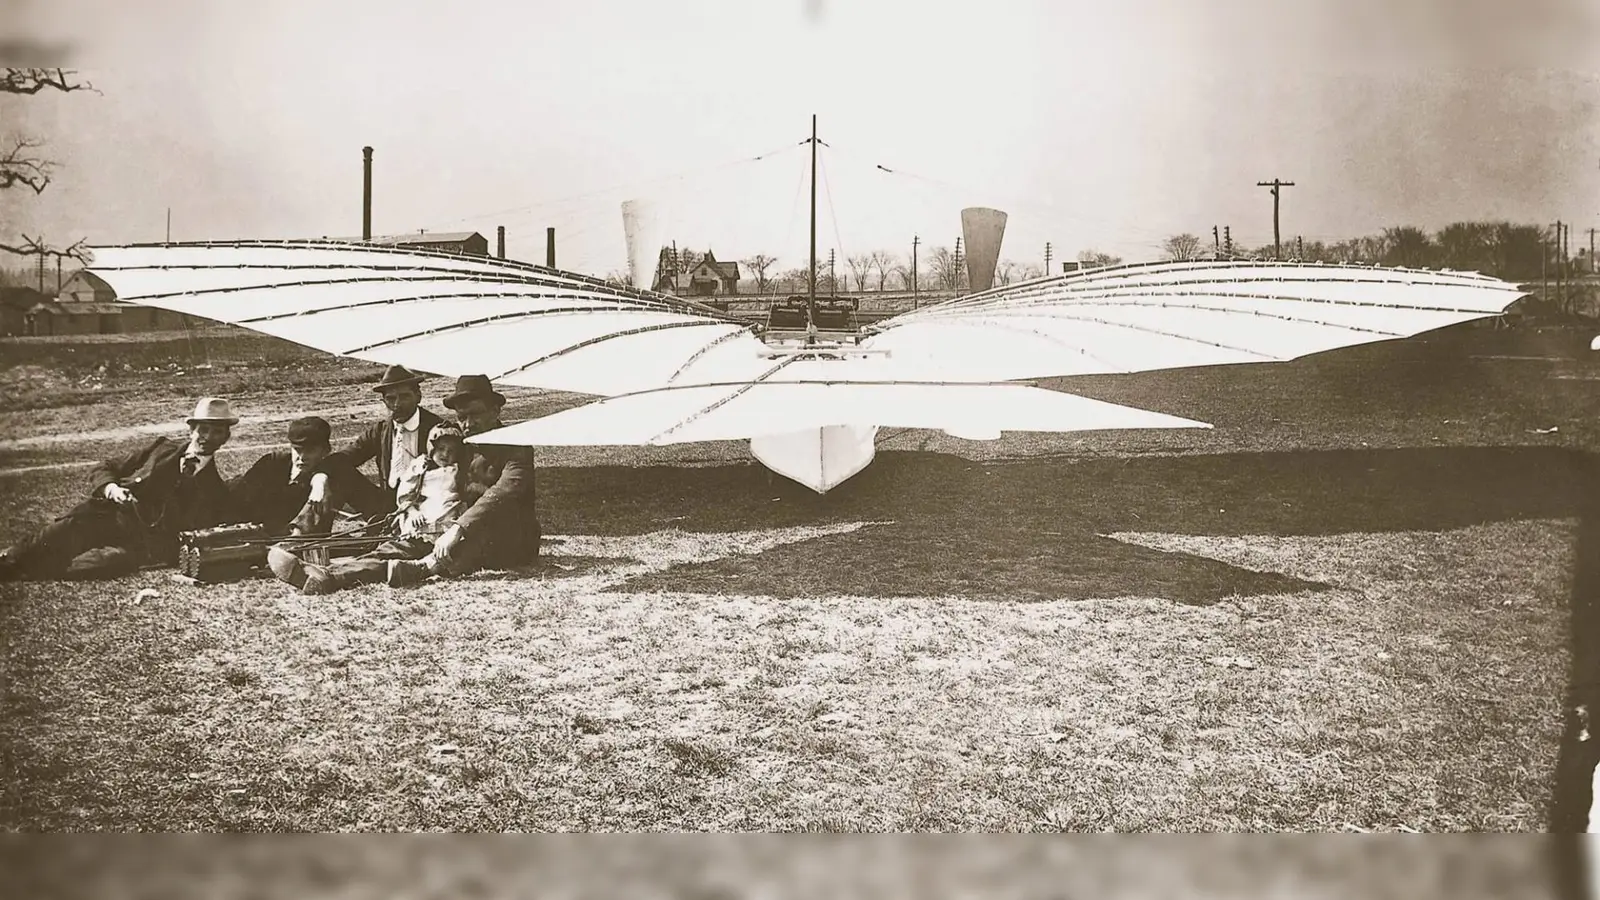 An eine Fledermaus erinnert das Flugmodell Nr. 21, mit dem Gustav Weißkopf (rechts, mit seiner Tochter Rose und unbekannten Helfern) am 14. August 1901 in Bridgeport (Connecticut) der erste Motorflug der Geschichte geglückt sein soll. Technisch war das nach neuesten Erkenntnissen möglich. (Foto: Archiv)